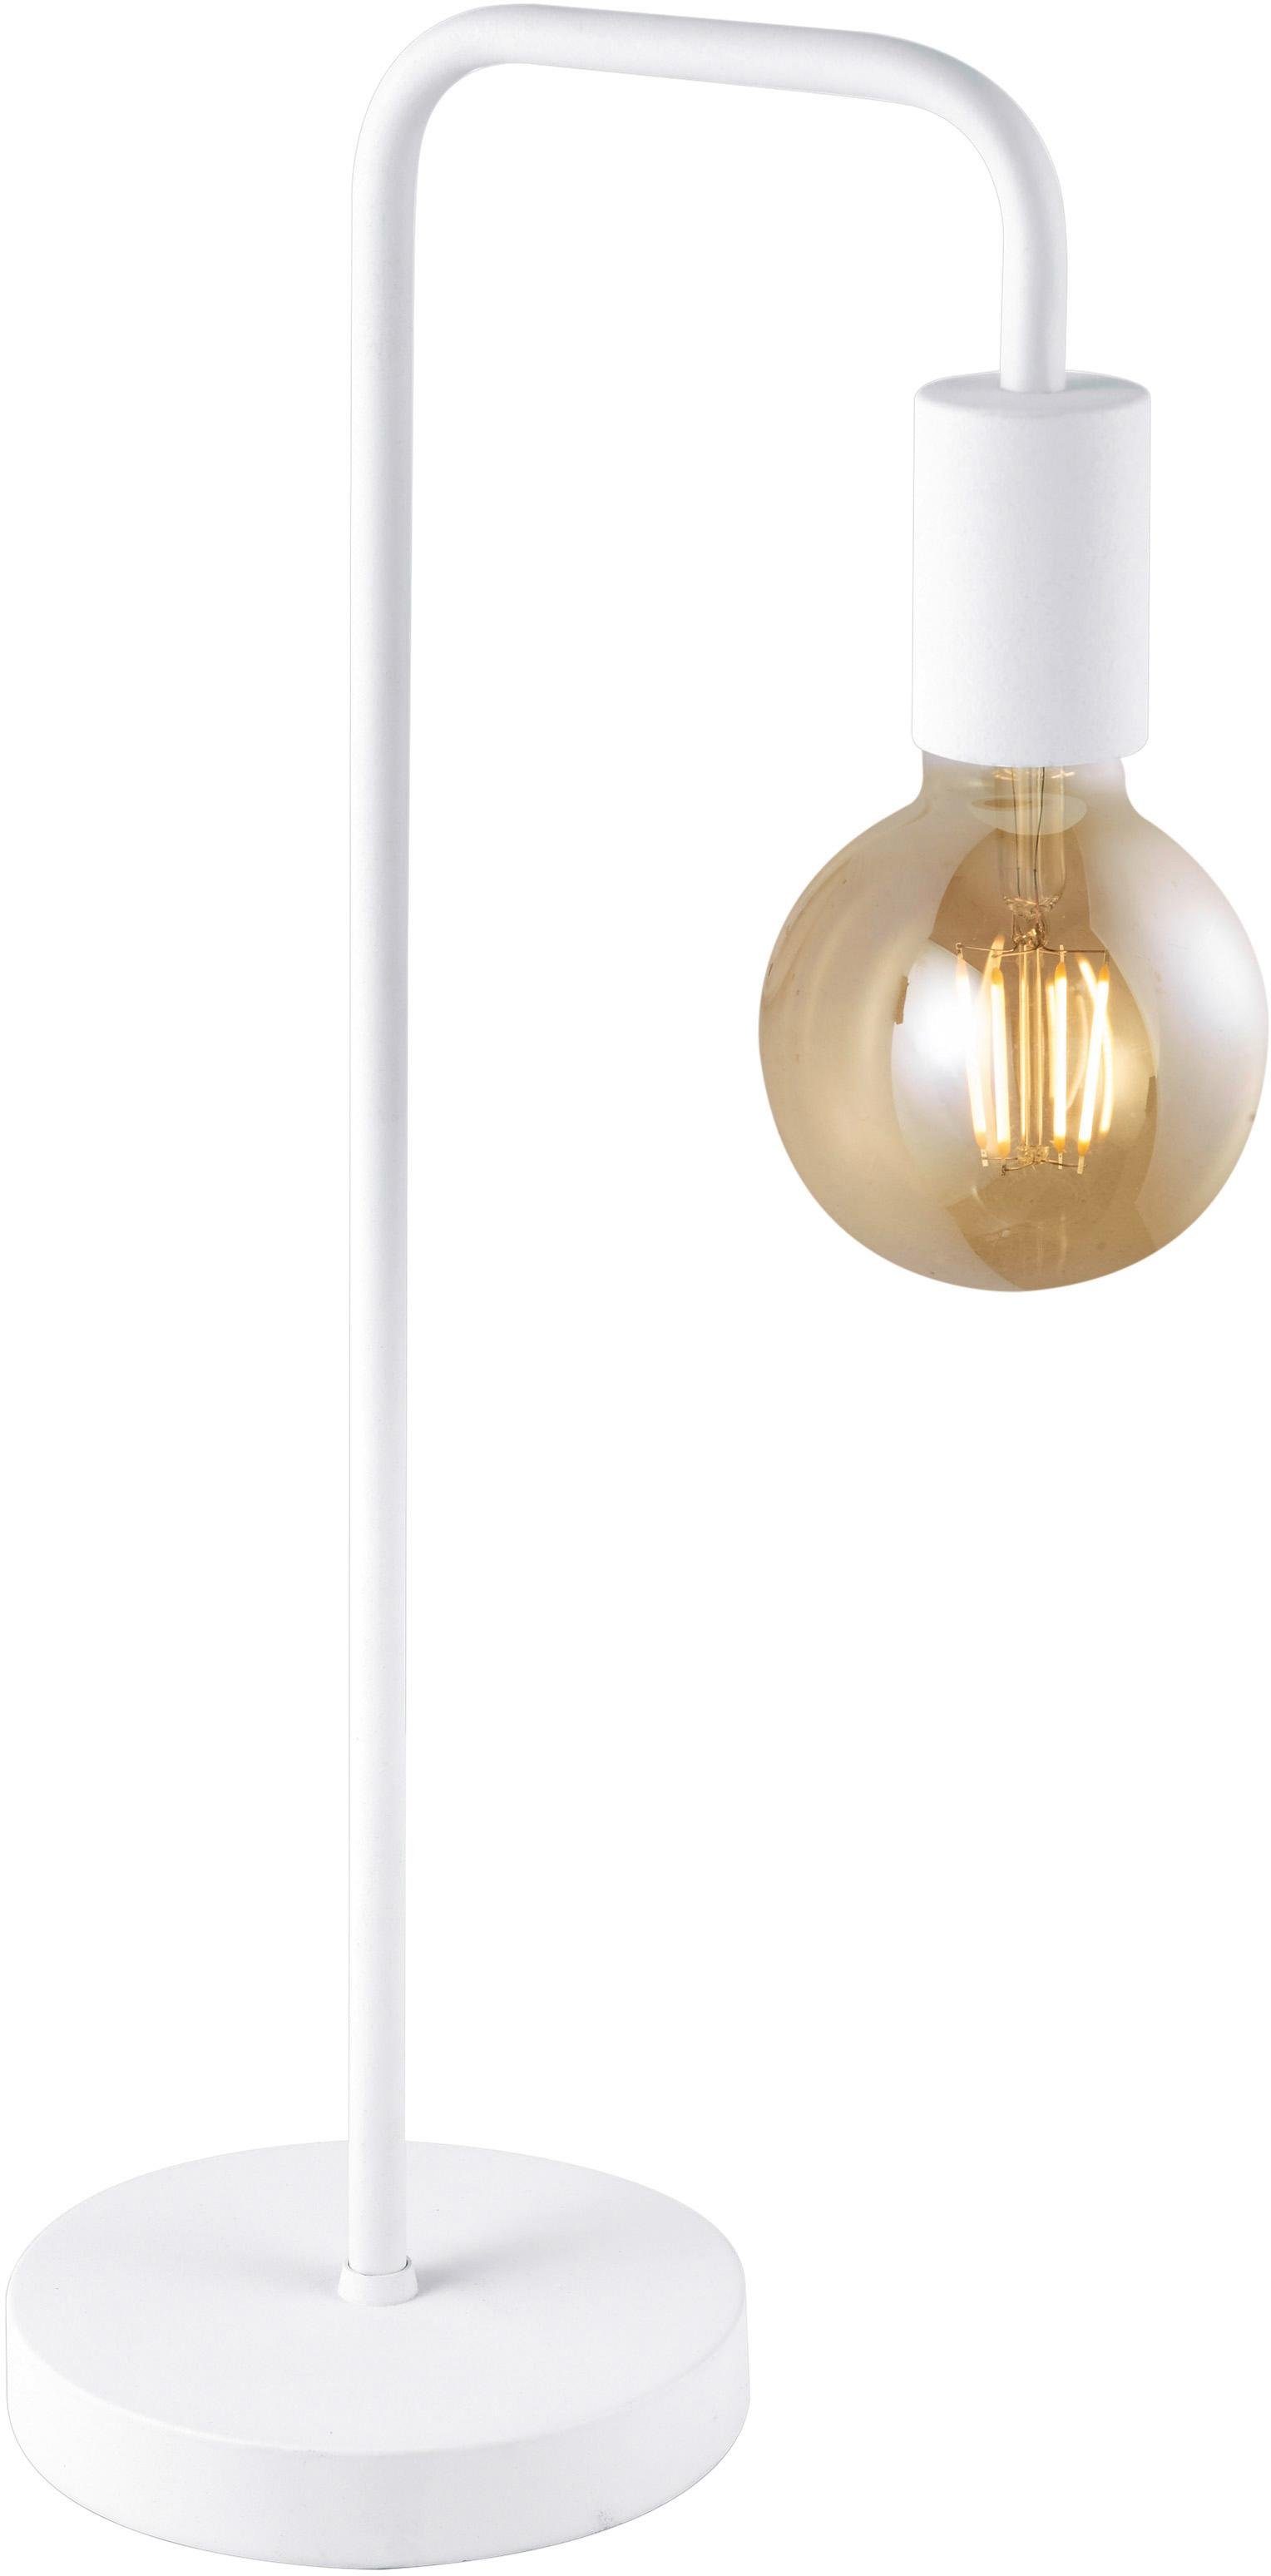 TRIO Leuchten exkl ohne Design mit Leuchtmittel Tischleuchte Leuchtmittel, Höhe weiß 51cm, Schnurschalter, E27, Diallo, modernes